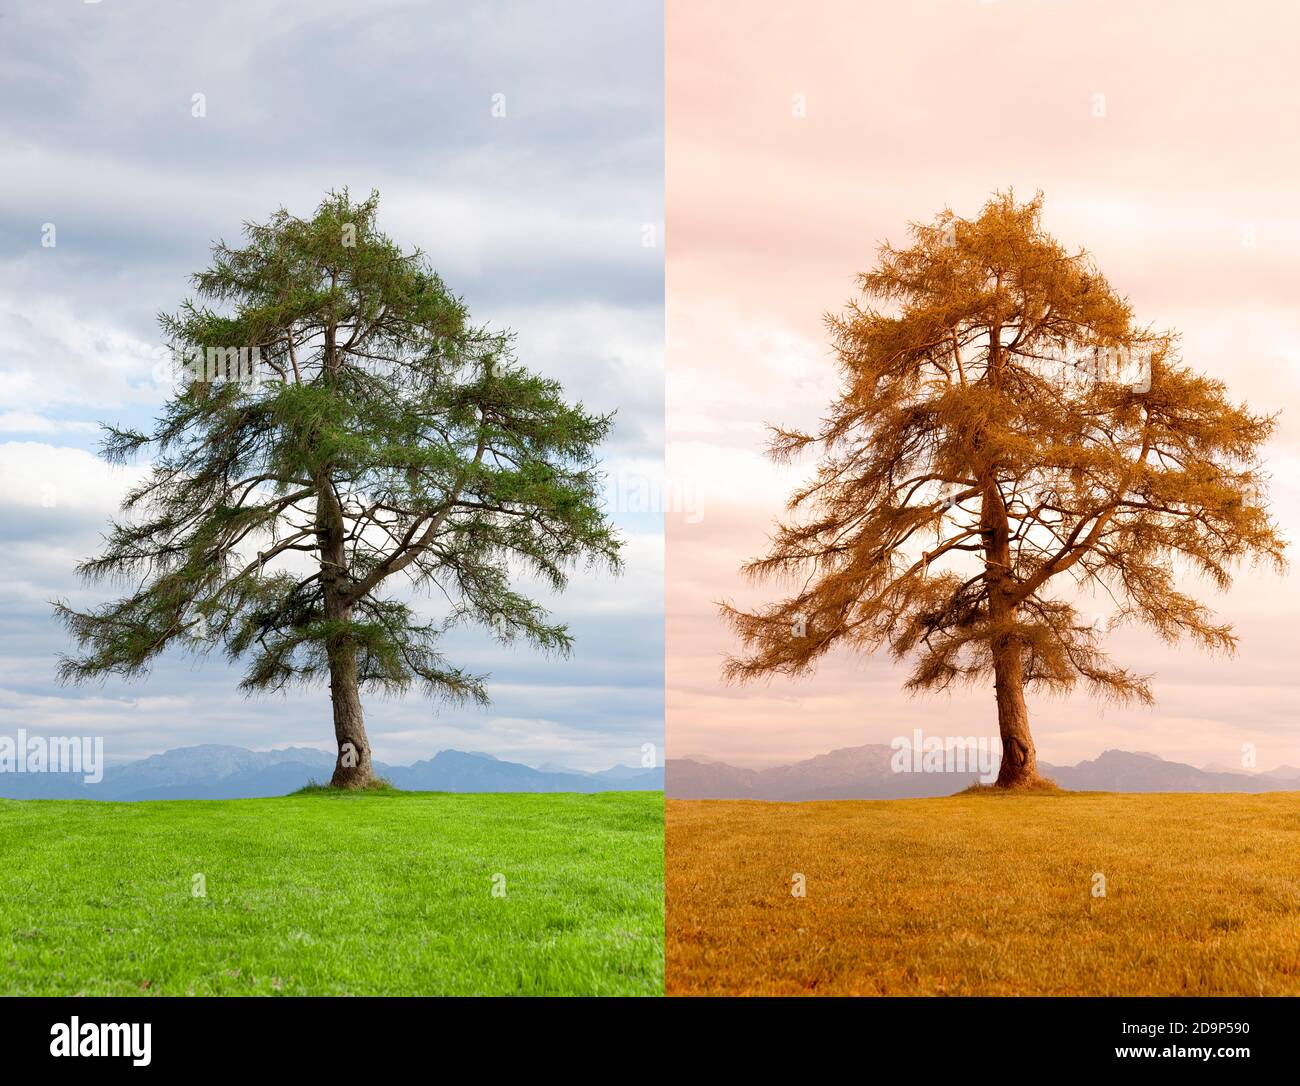 Árbol en el cambio de estaciones de verano a otoño Foto de stock